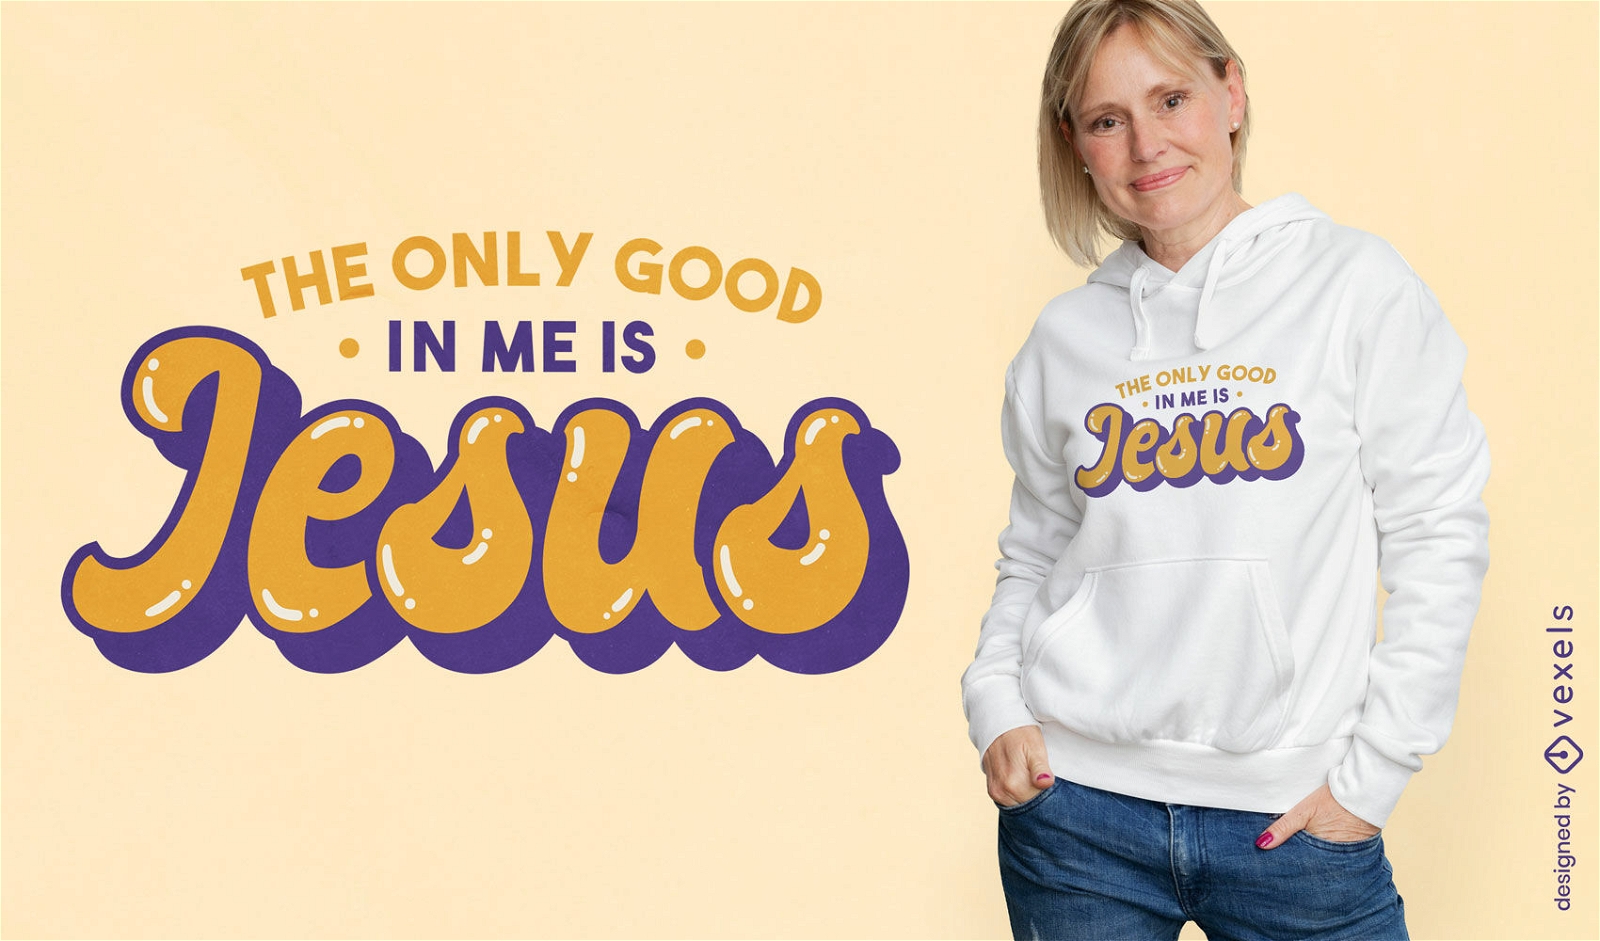 El único bien en mi diseño de camiseta es Jesús.